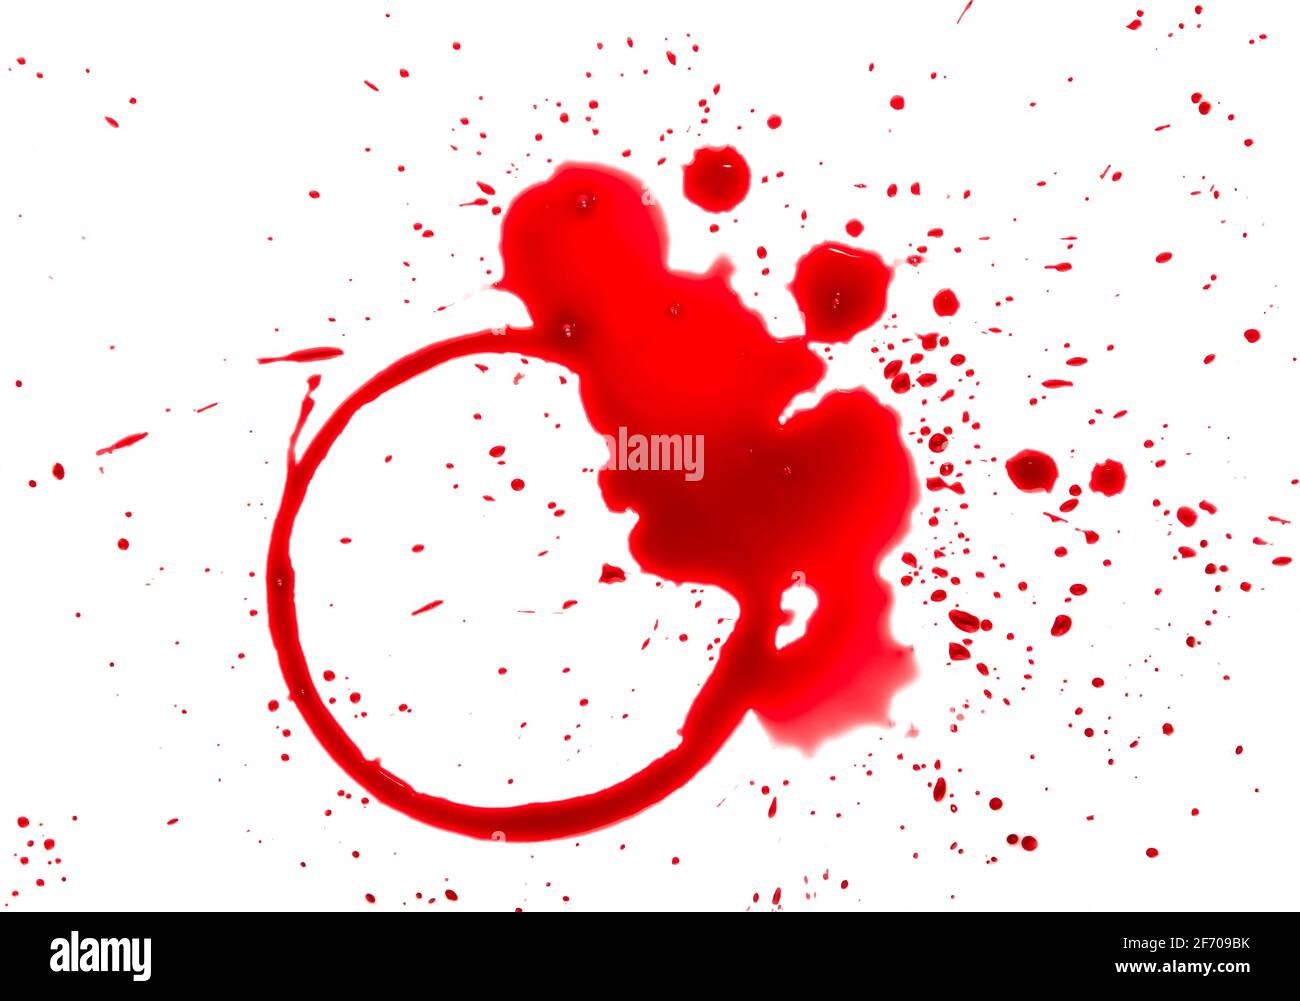 Nahaufnahme von feuchten Flecken von Rotweinglas oder Flasche, Ring und Tropfen isoliert auf weißem Hintergrund Stockfoto